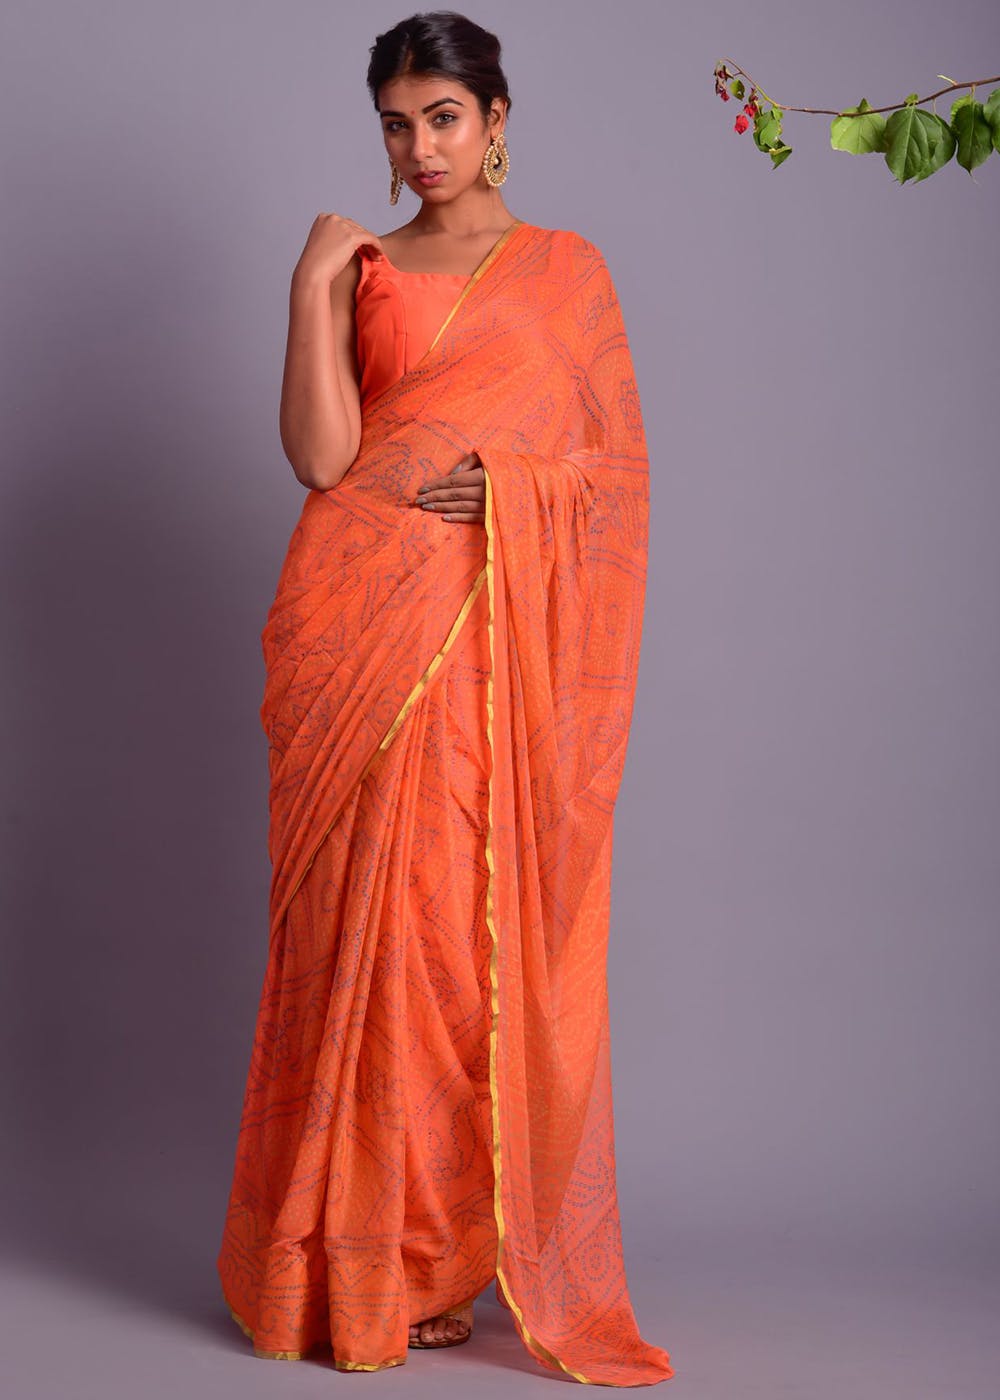 Bandhani Printed Chiffon Saree With Gold Trim - Orange